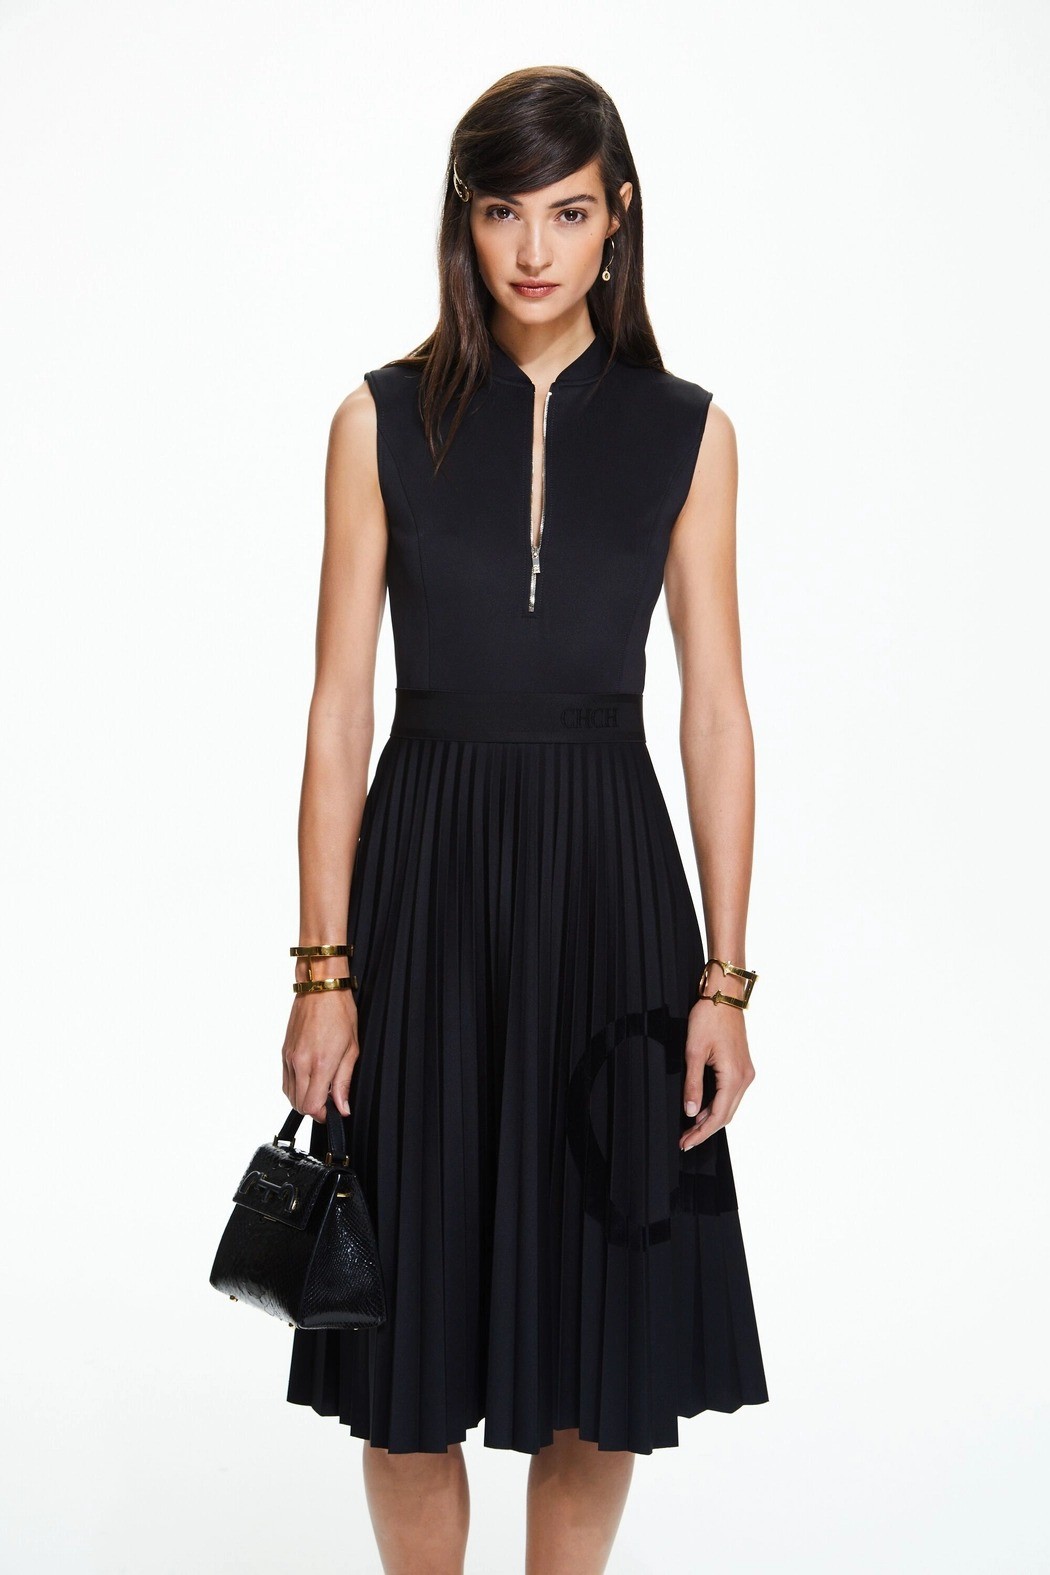 كارولينا هيريرا - فستان نيوبرين بتصميم مطوي - أسود